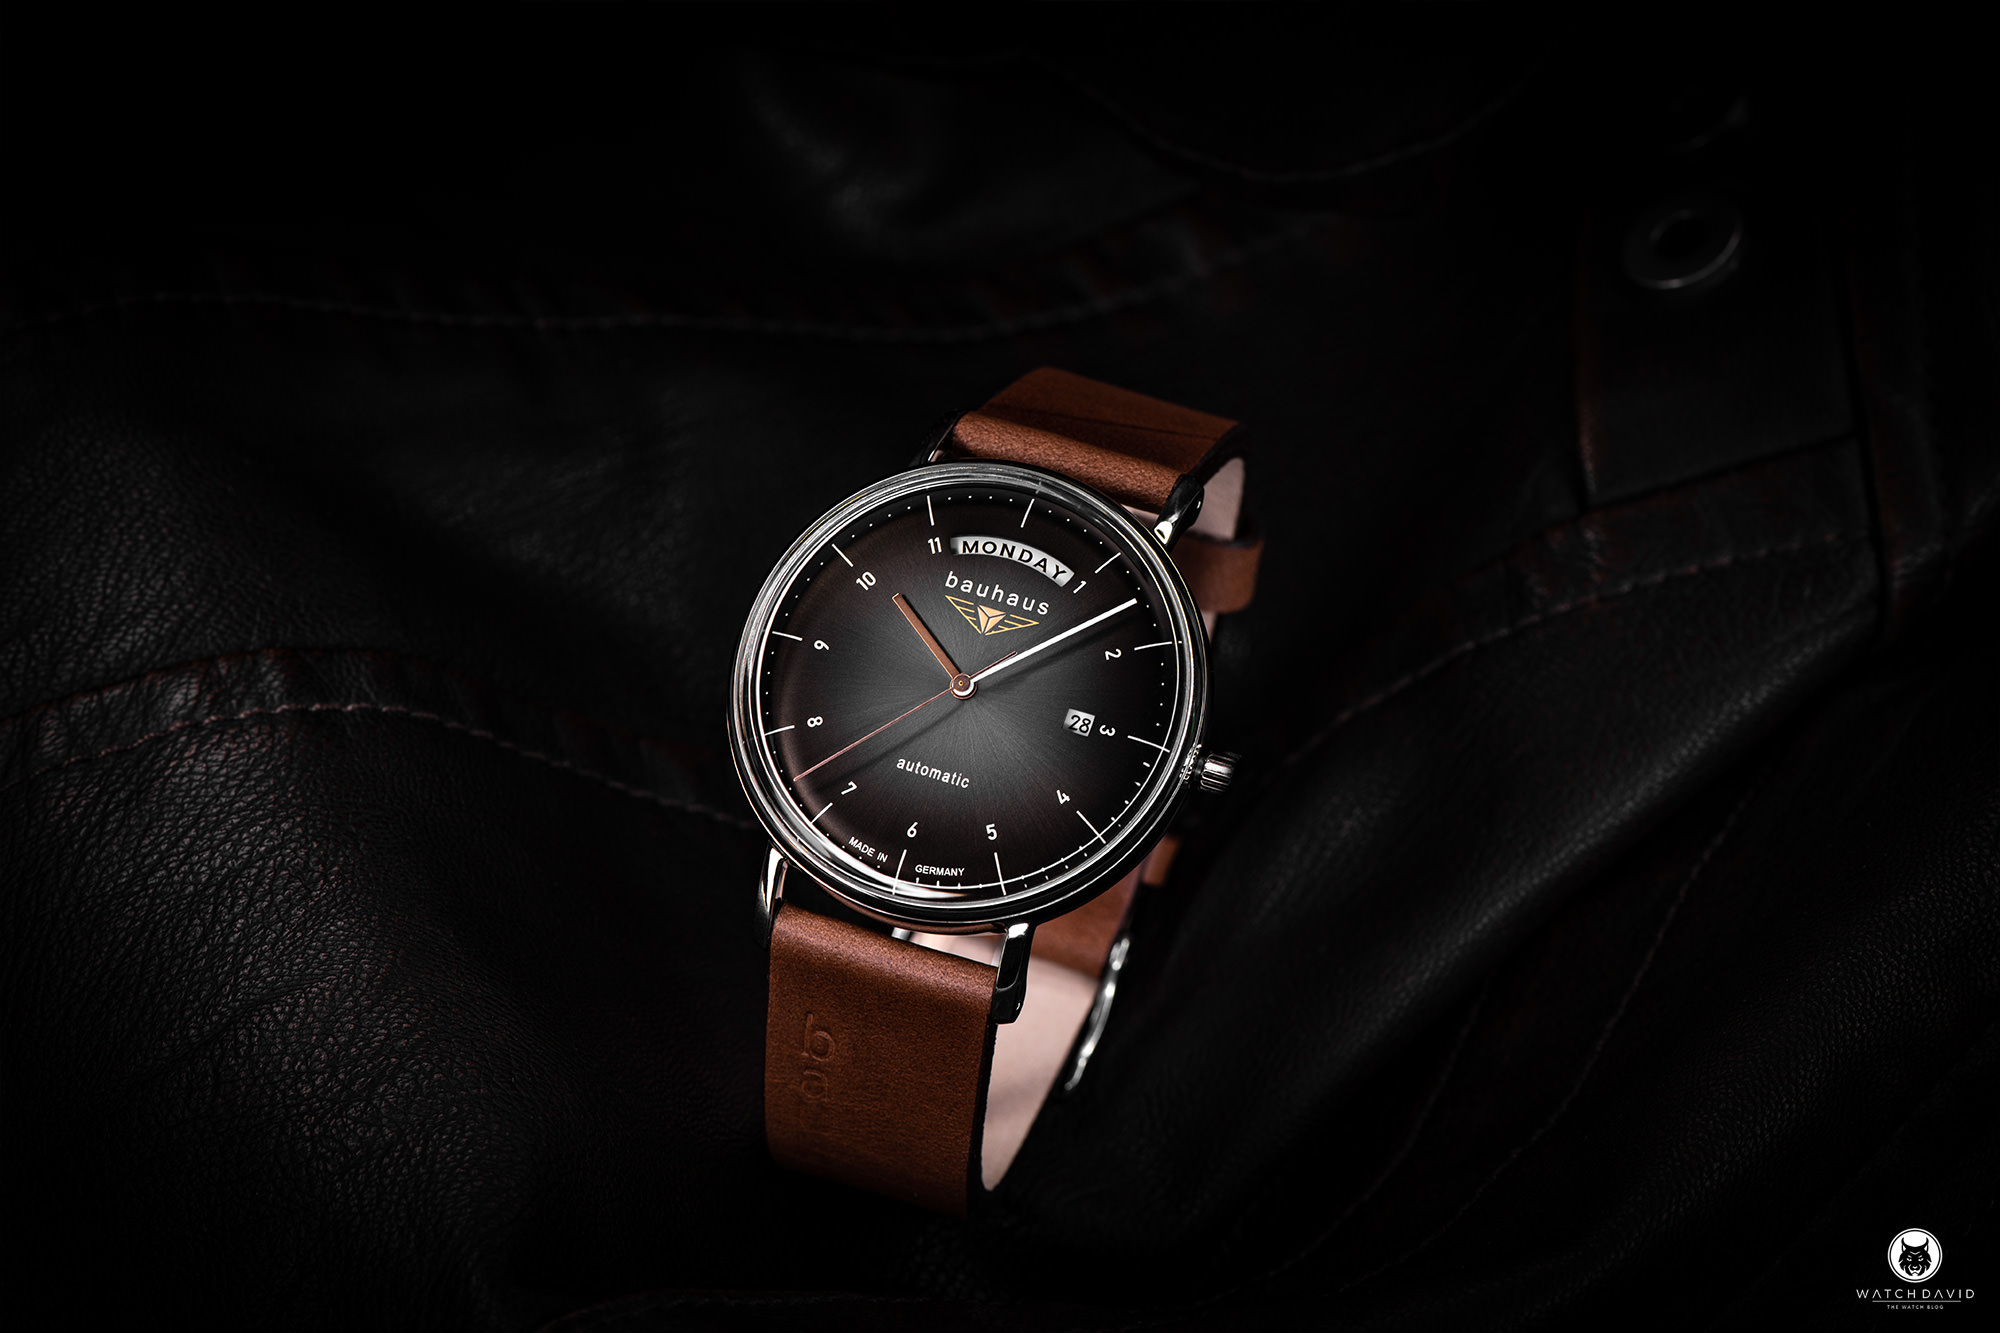 Bauhaus Automatic Watch 2162 WATCHDAVID® Review –